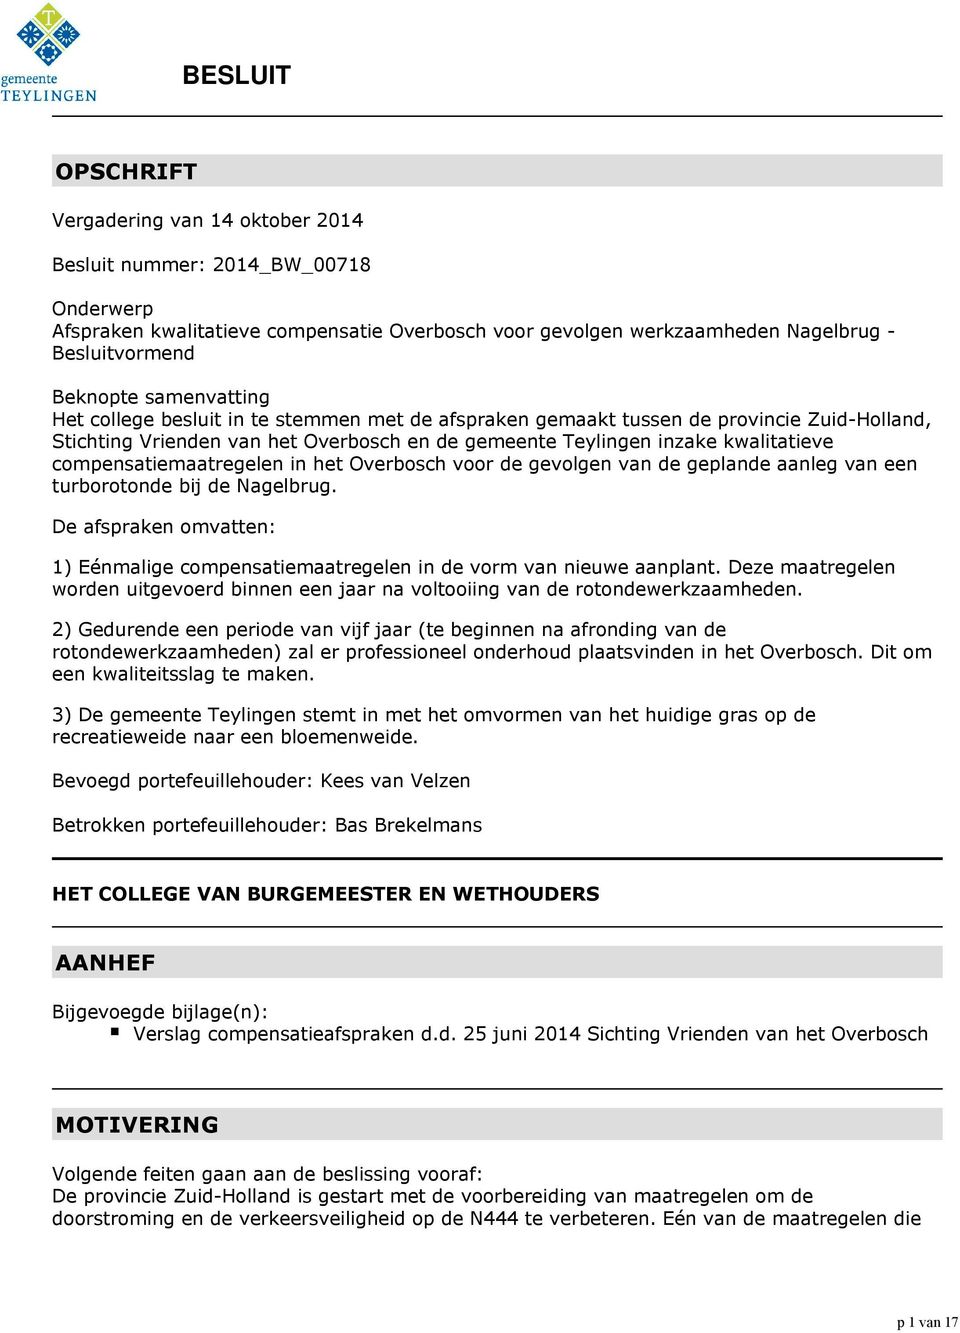 compensatiemaatregelen in het Overbosch voor de gevolgen van de geplande aanleg van een turborotonde bij de Nagelbrug.